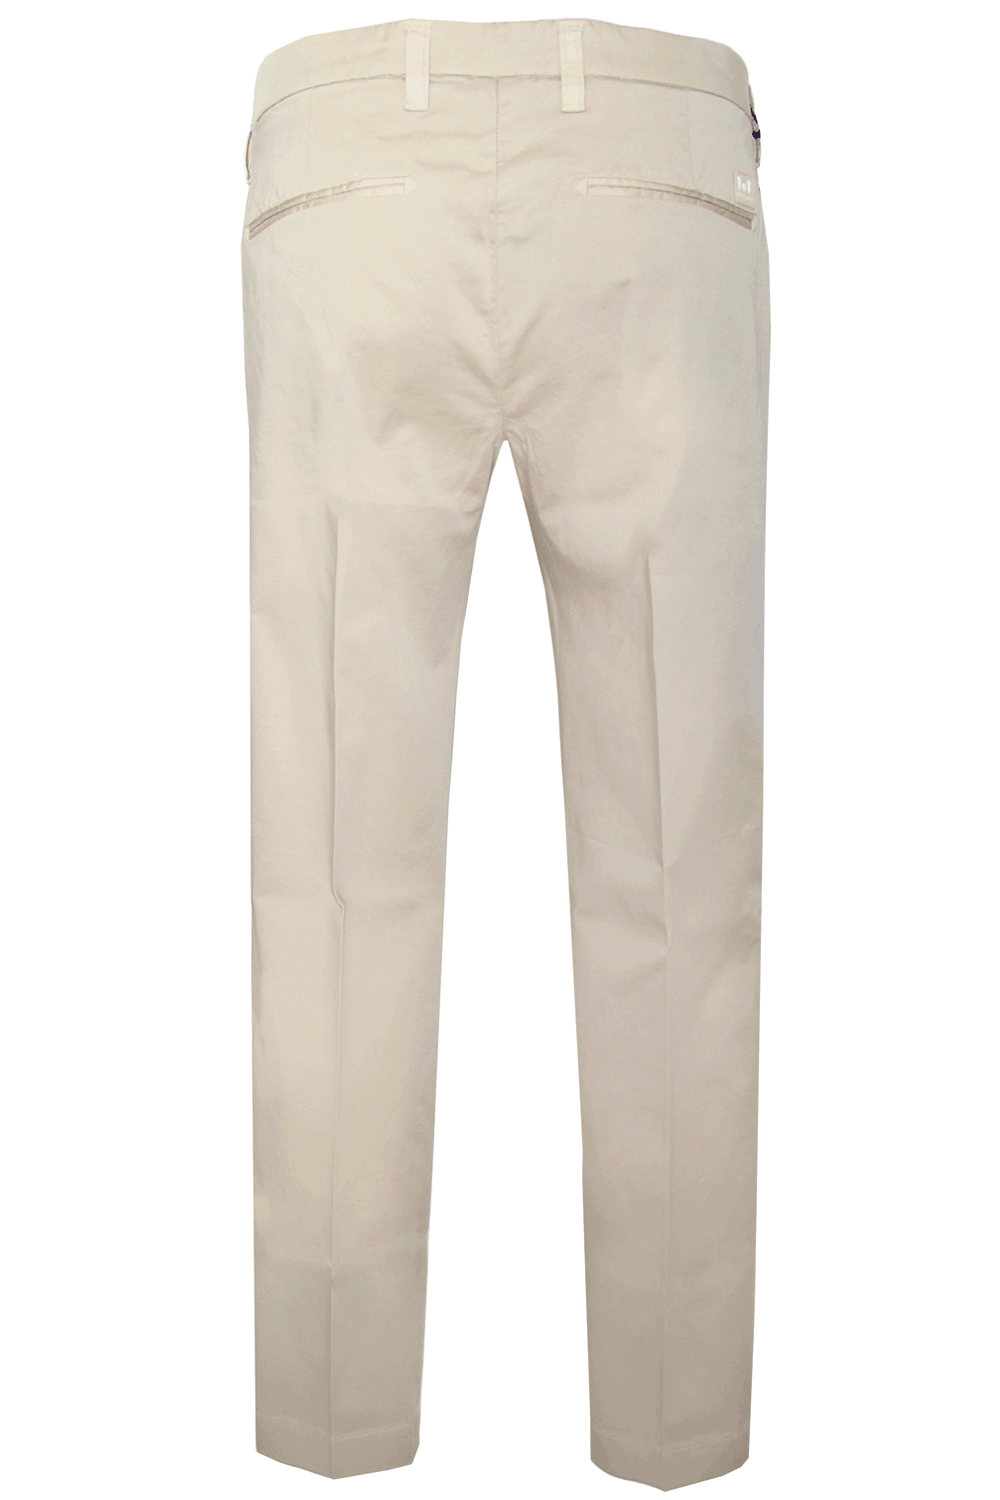 Pantalone chiaro in cotone- ENTRE AMIS Pantaloni e jeans ENTRE AMIS   